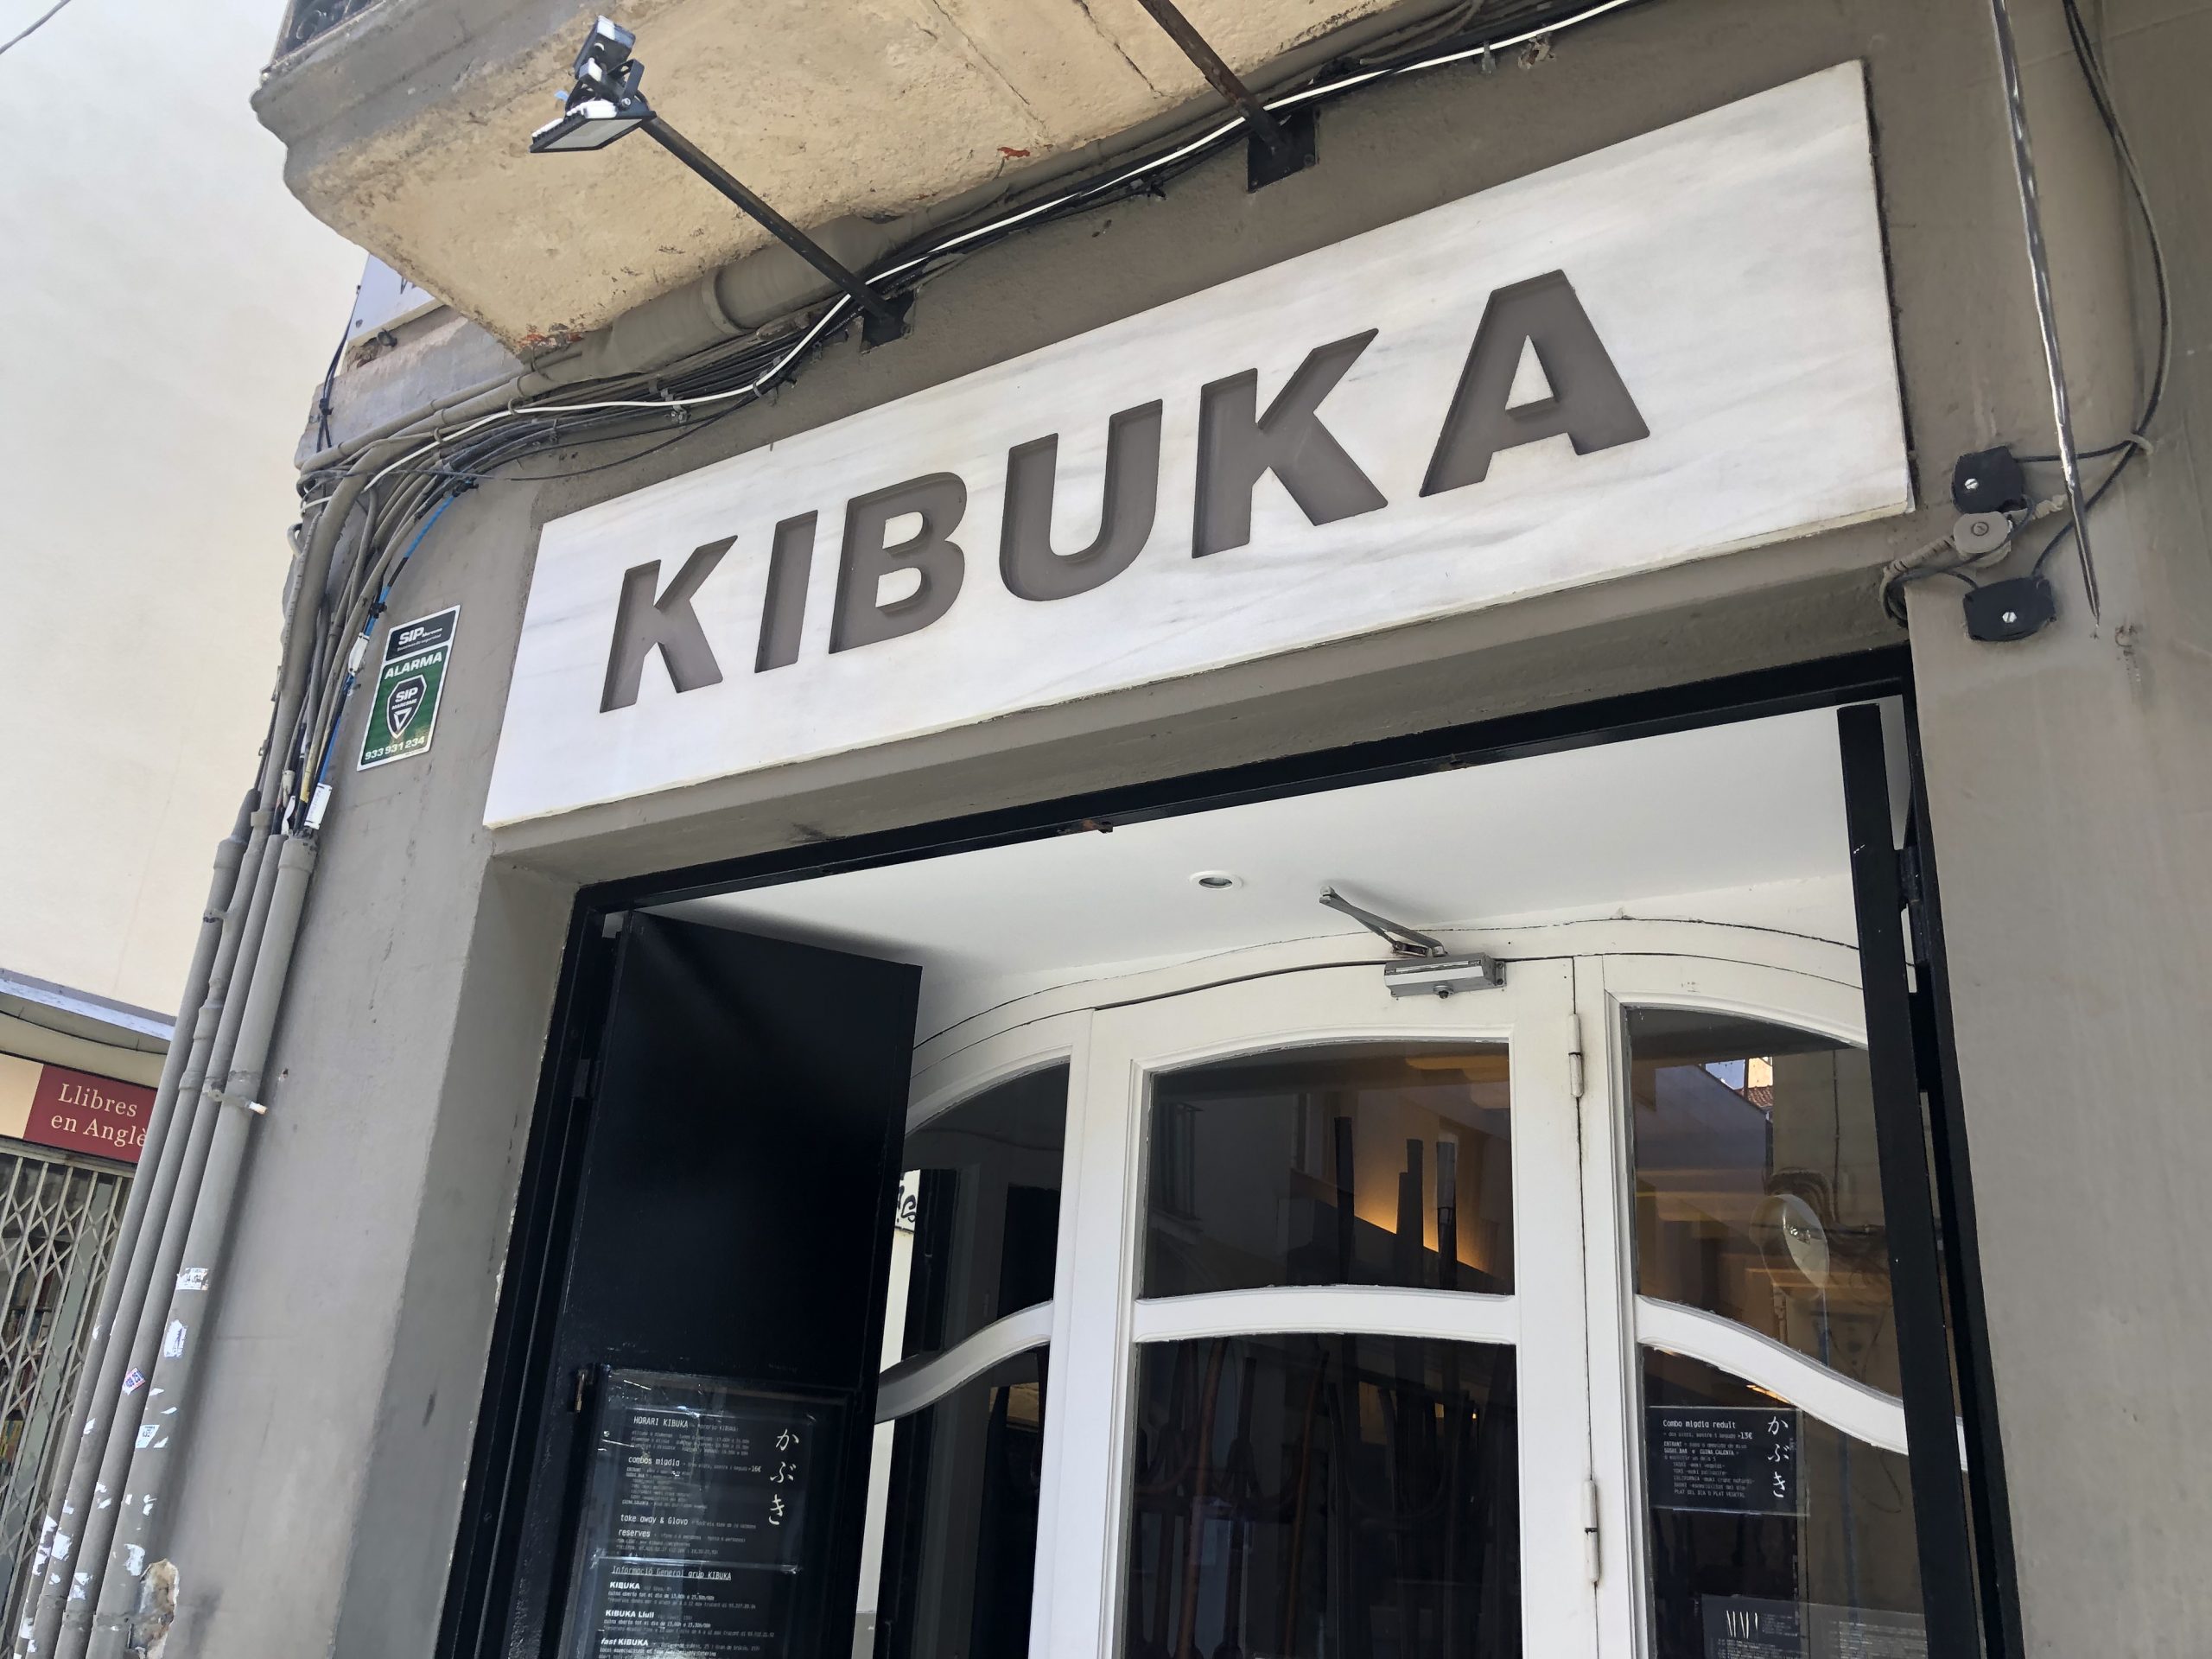 Kibuka restaurant sign in Gràcia